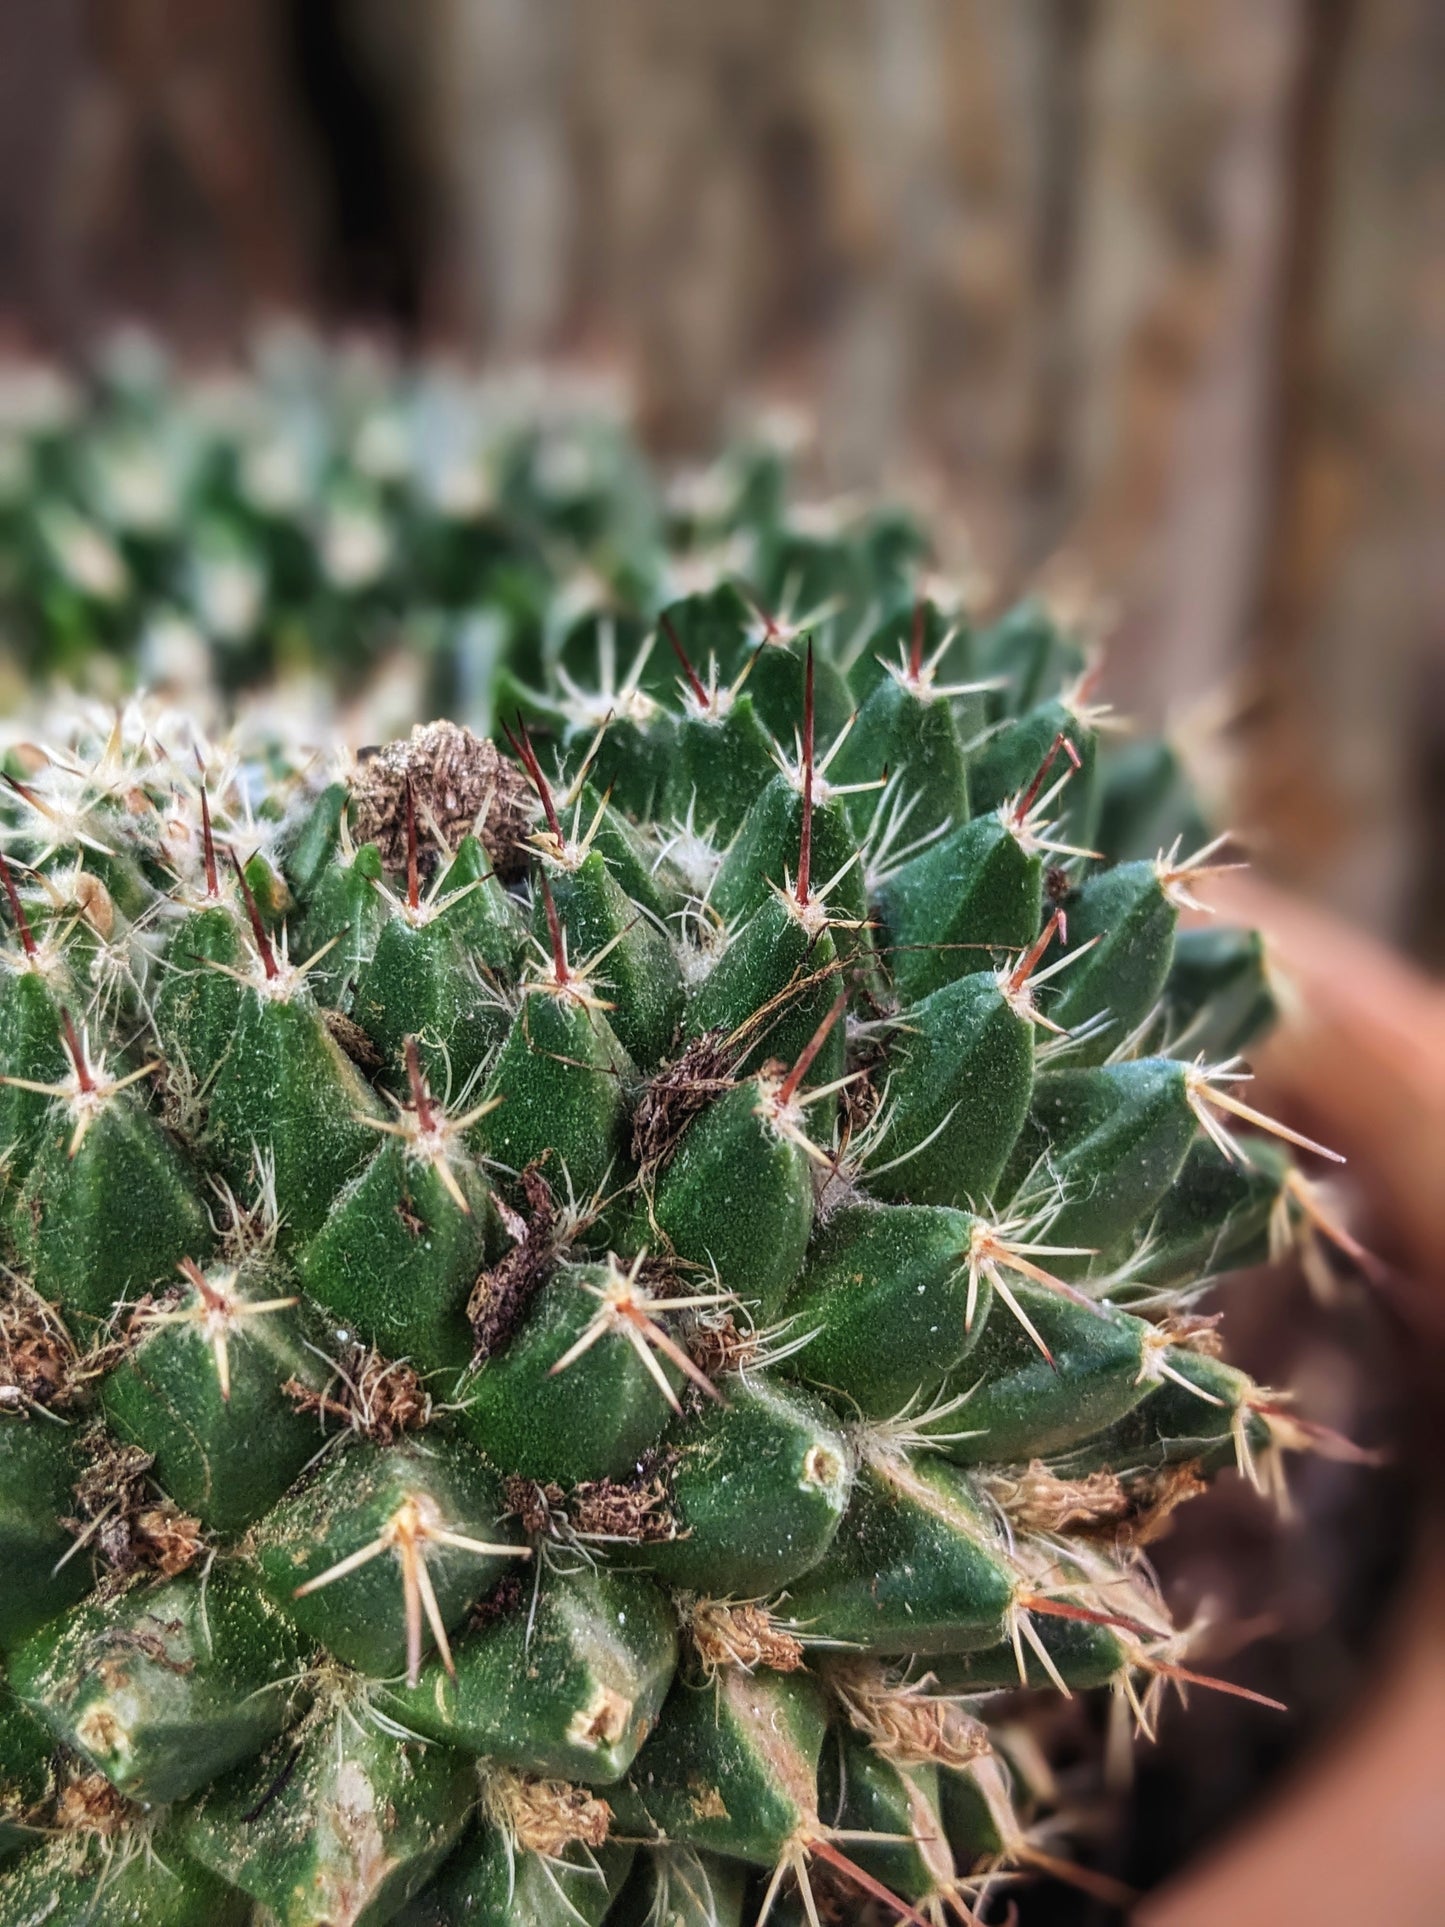 Prickly (Cactus)